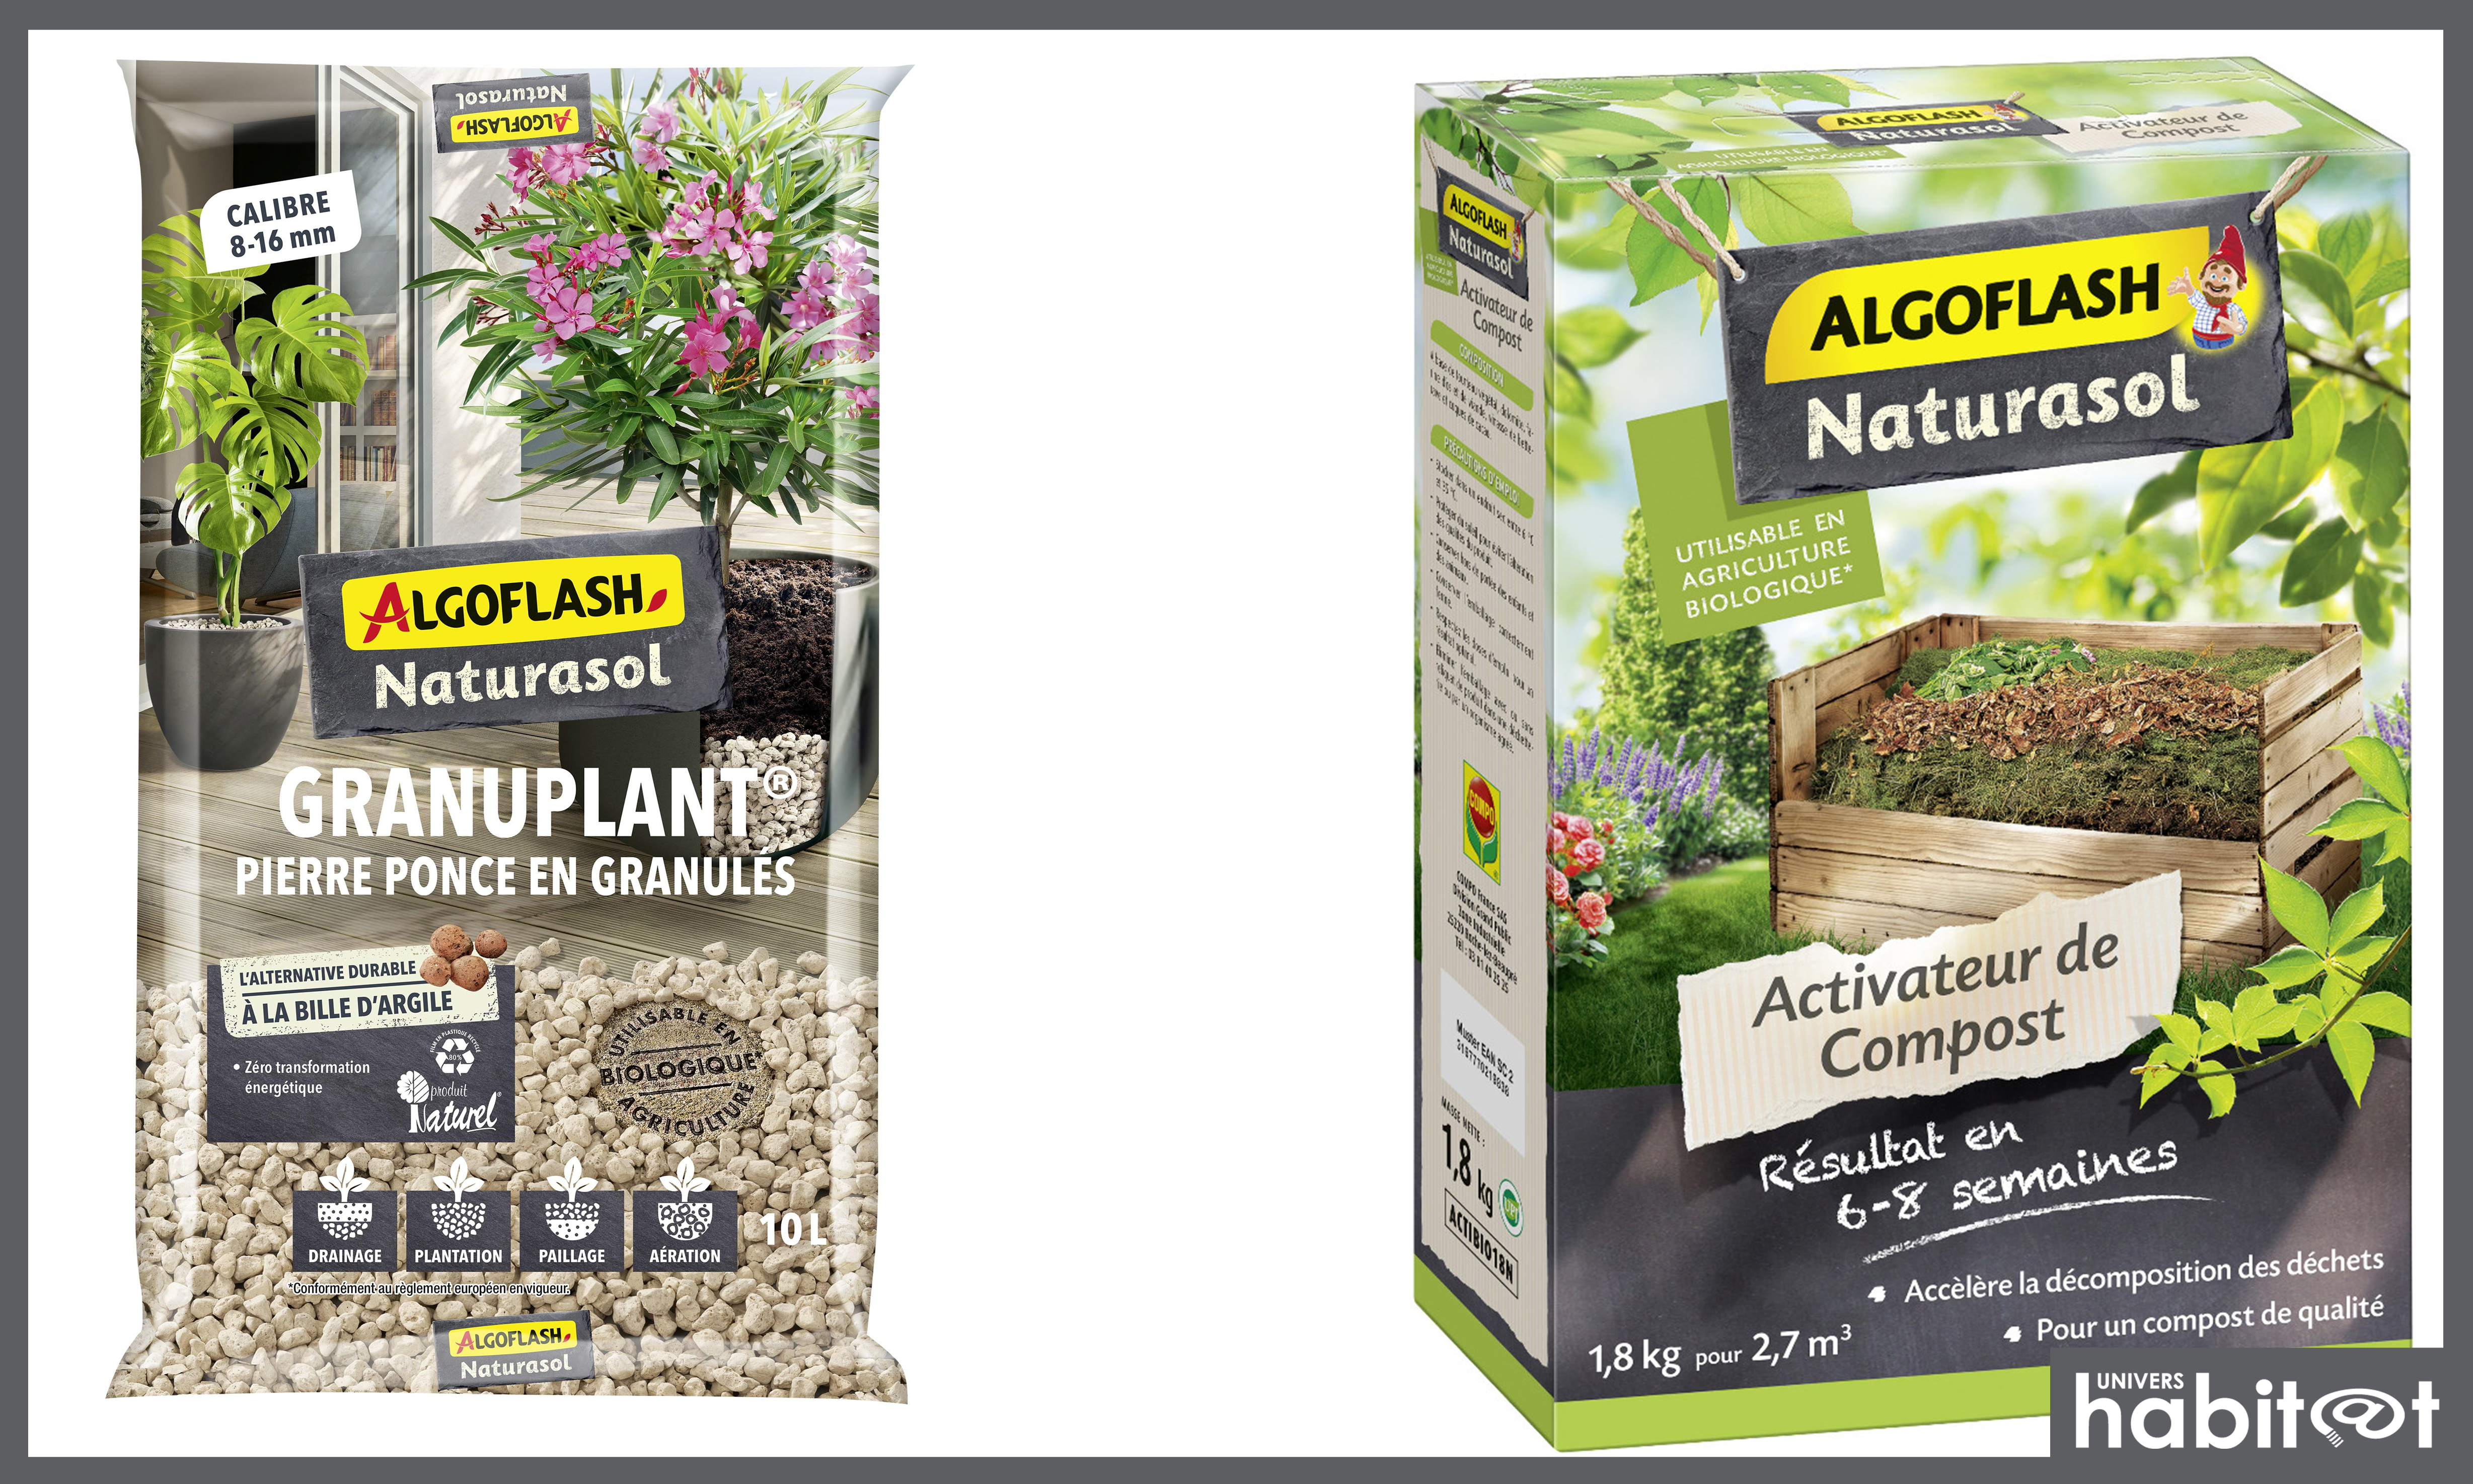 Algoflash Naturasol lance Granuplant et son nouvel activateur de compost 